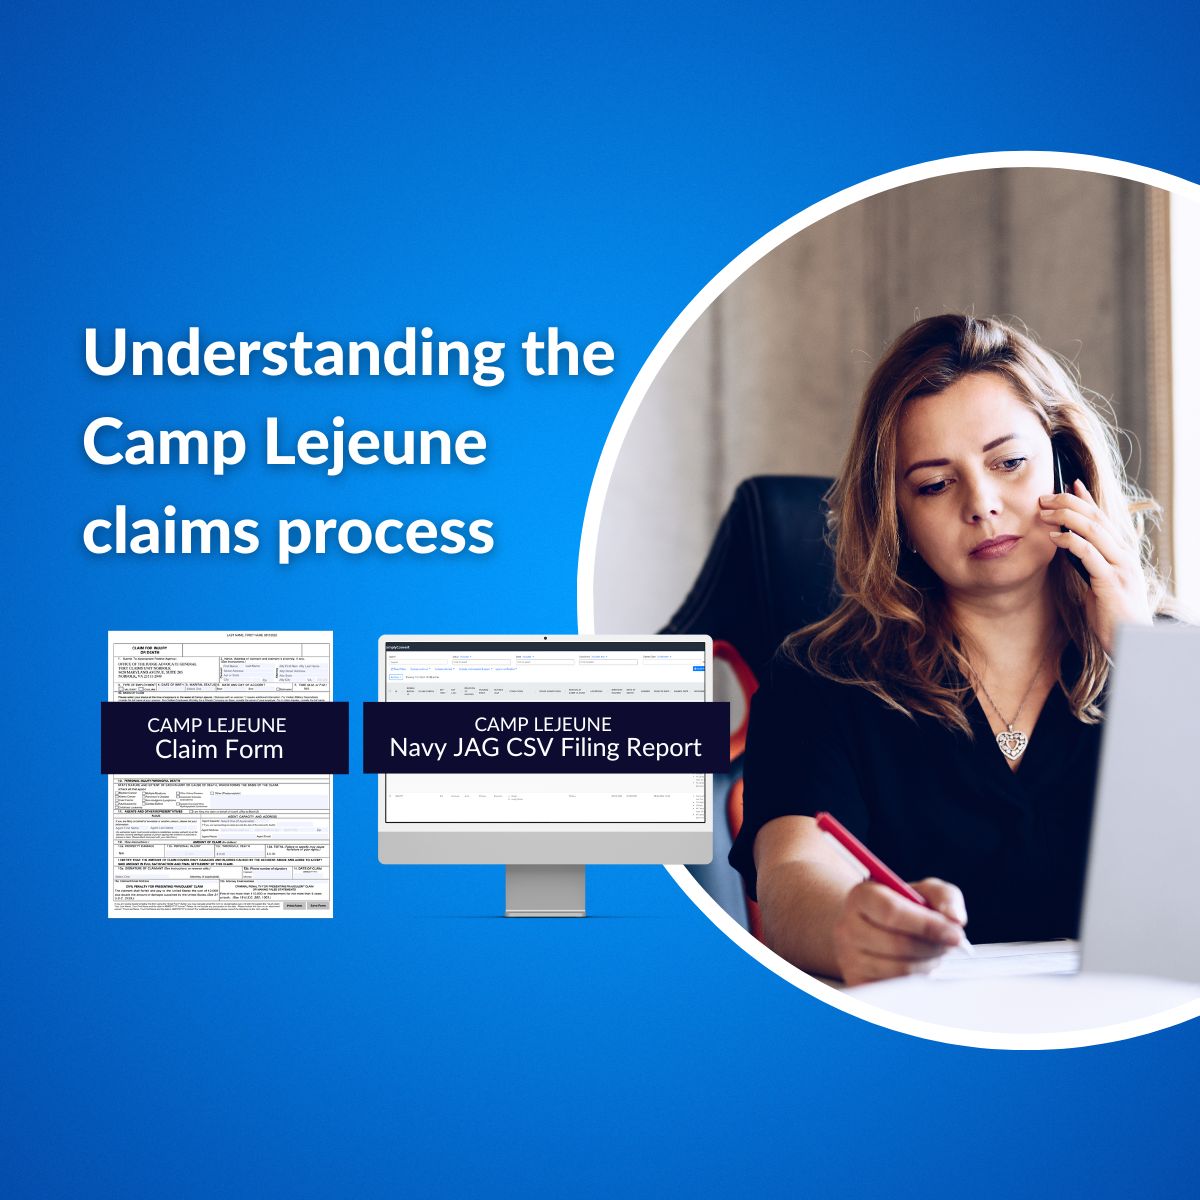 Camp Lejeune Claims Process